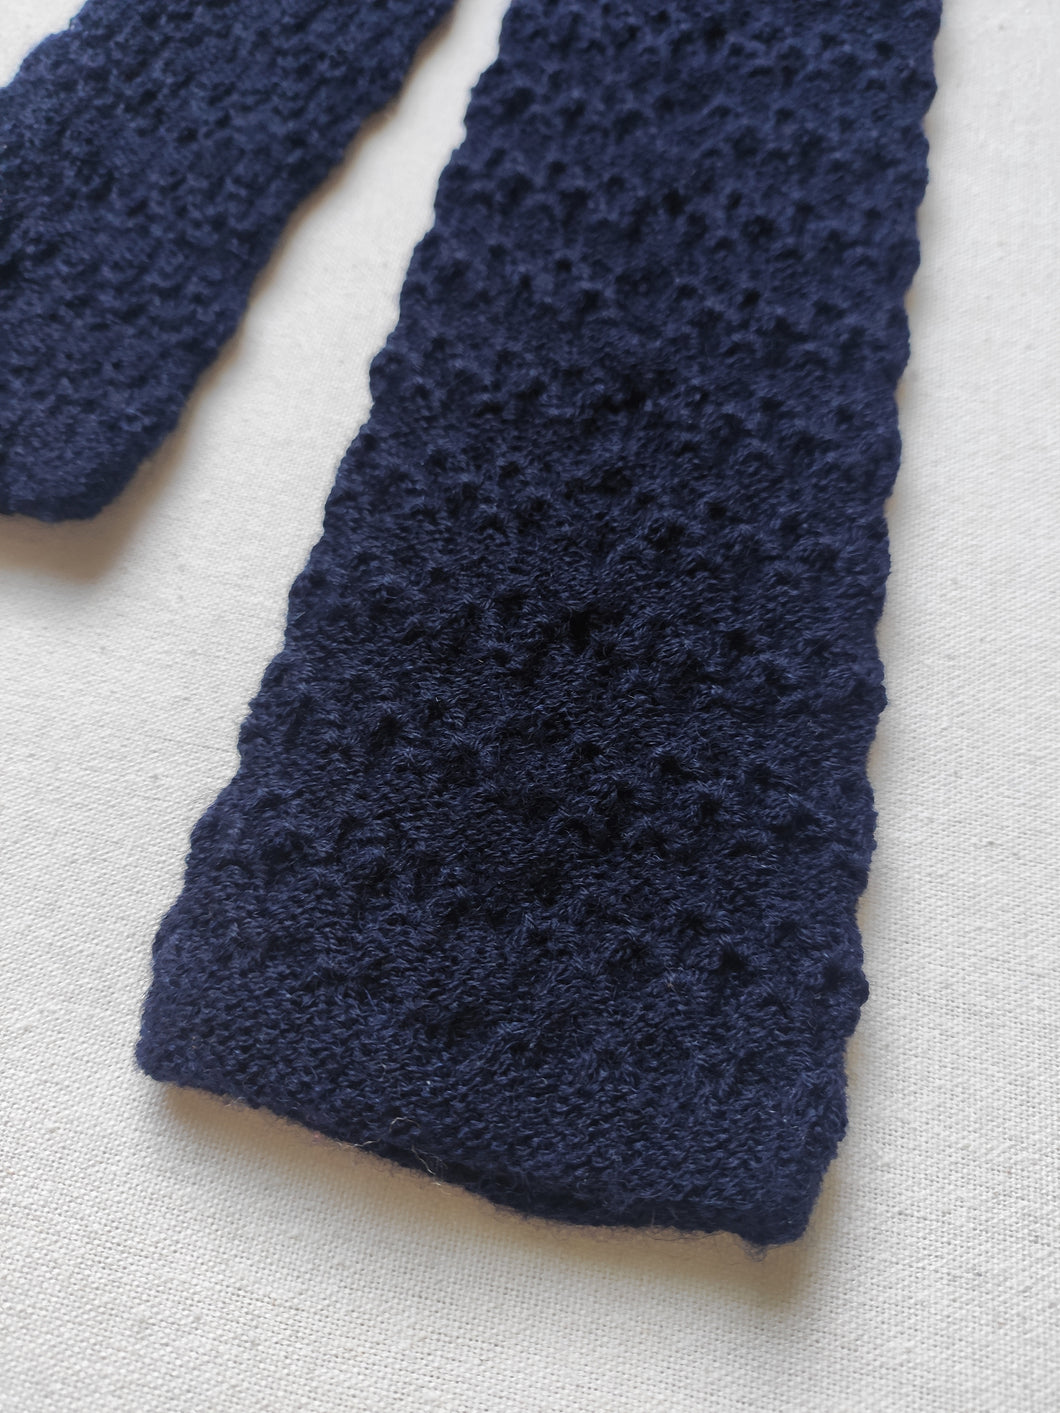 Cravate bleue marine large en maille tricotée vintage